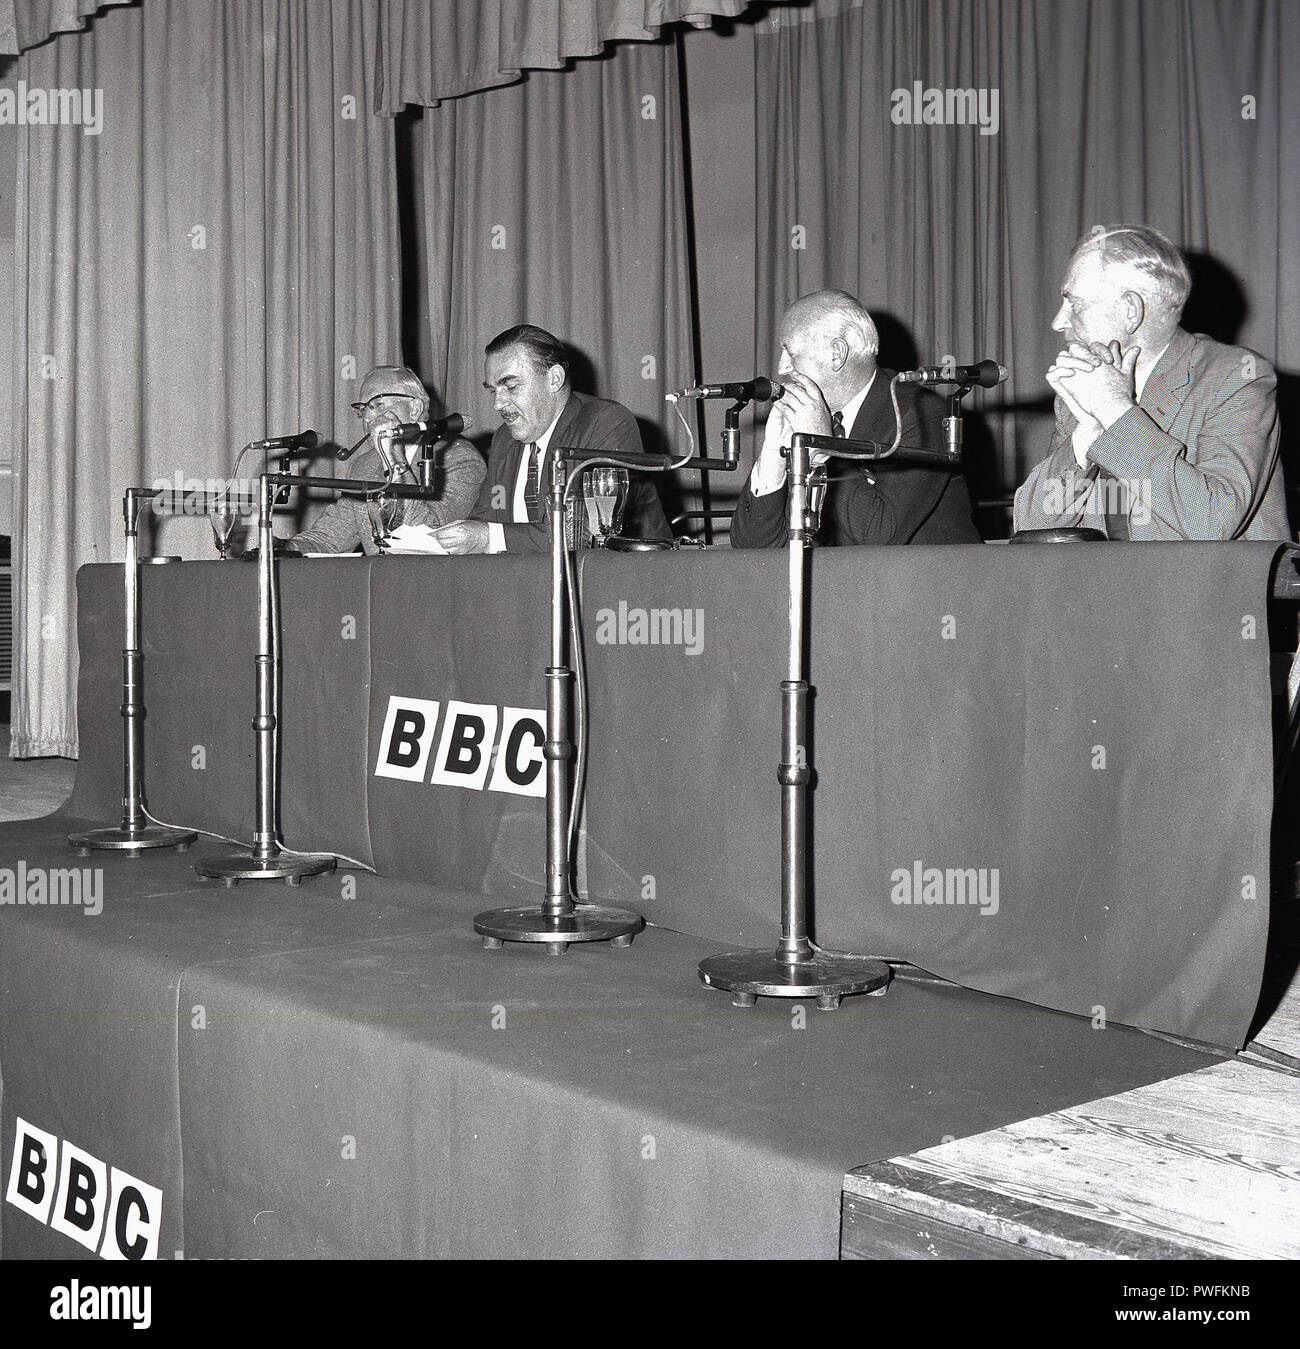 1967, ältere Mitglieder des Vorstands der BBC, die British Broadcasting Corporation, sitzen auf einer Plattform mit Mikrofonen für eine Präsentation und öffentliche Treffen, Bucks, England, UK. Stockfoto